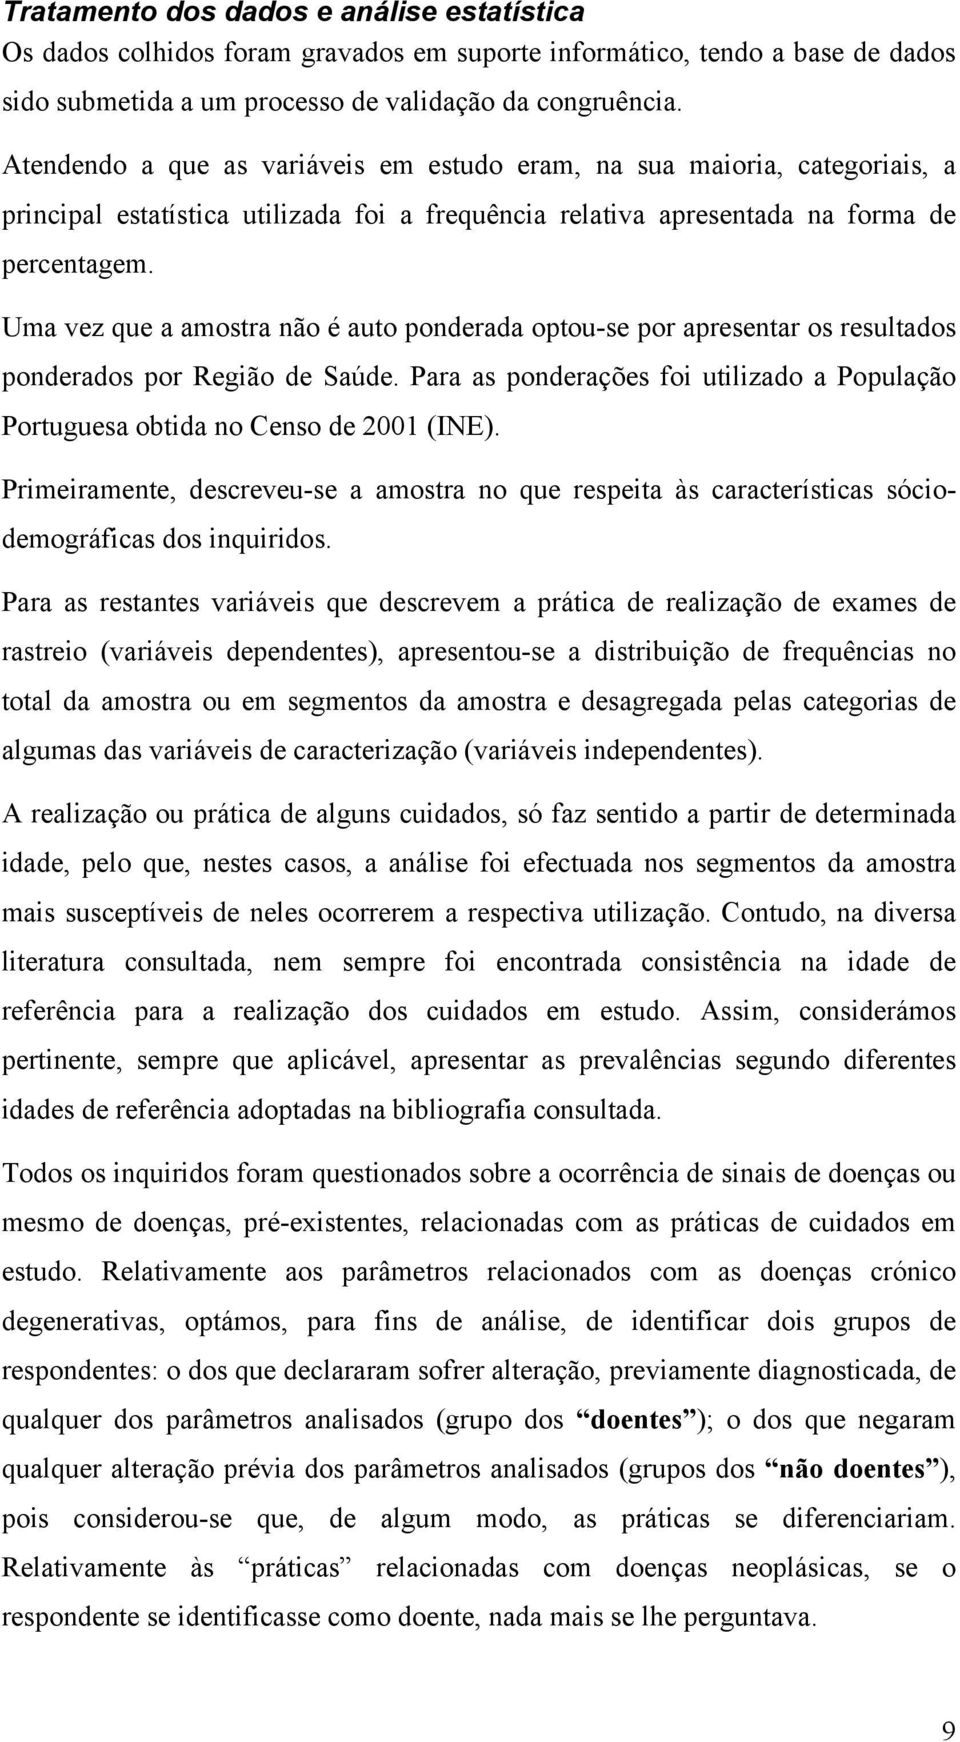 Uma vez que a amostra não é auto ponderada optou-se por apresentar os resultados ponderados por Região de Saúde. Para as ponderações foi utilizado a População Portuguesa obtida no Censo de 2001 (INE).